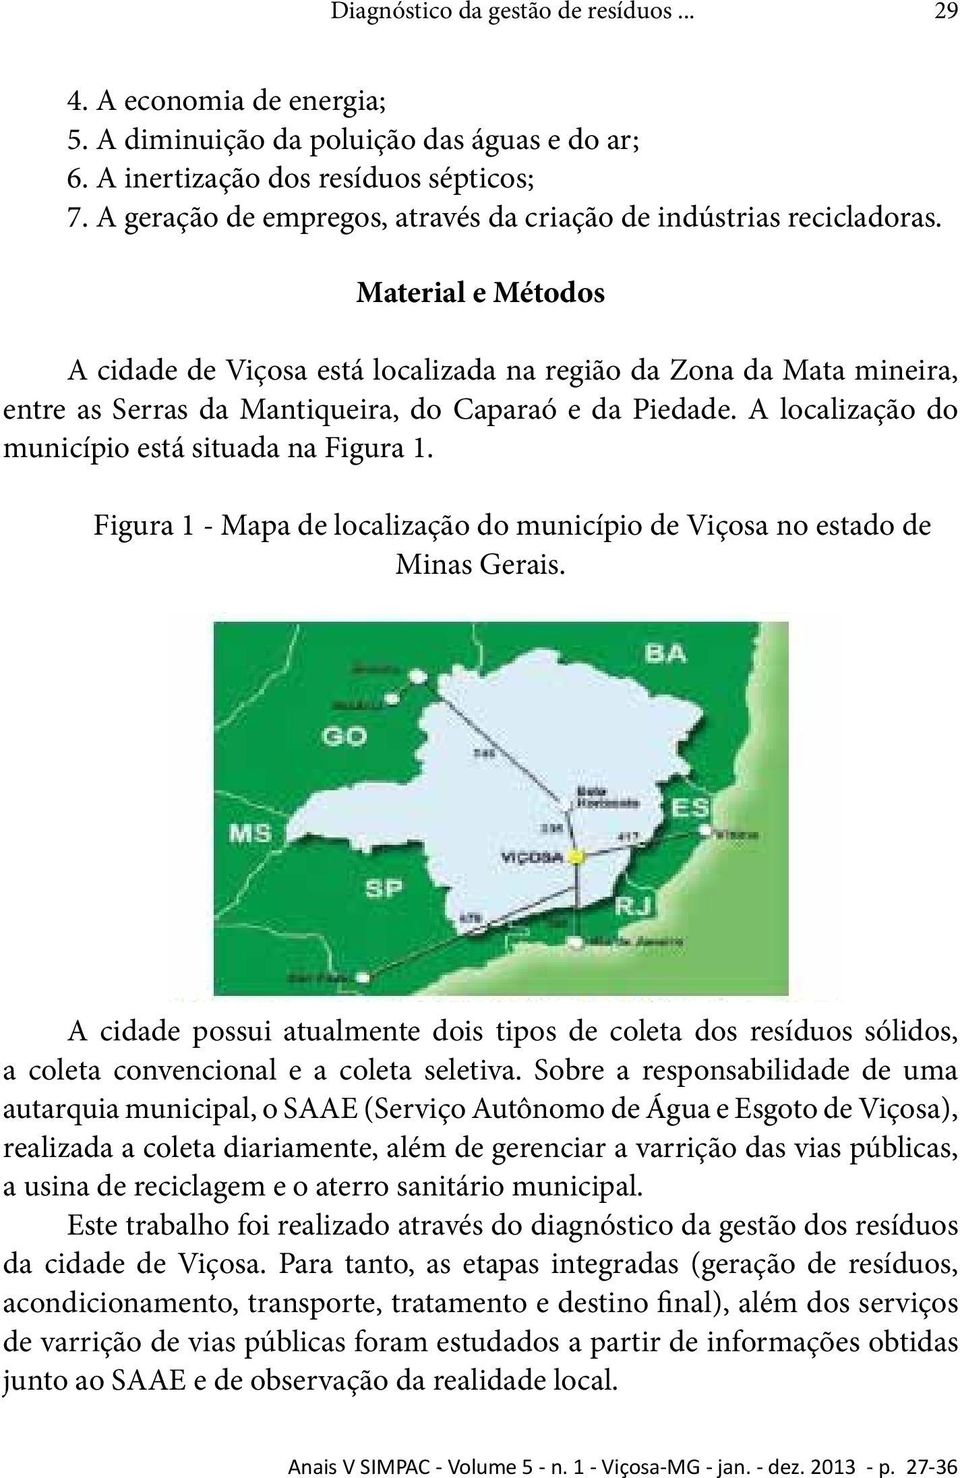 Material e Métodos A cidade de Viçosa está localizada na região da Zona da Mata mineira, entre as Serras da Mantiqueira, do Caparaó e da Piedade. A localização do município está situada na Figura 1.